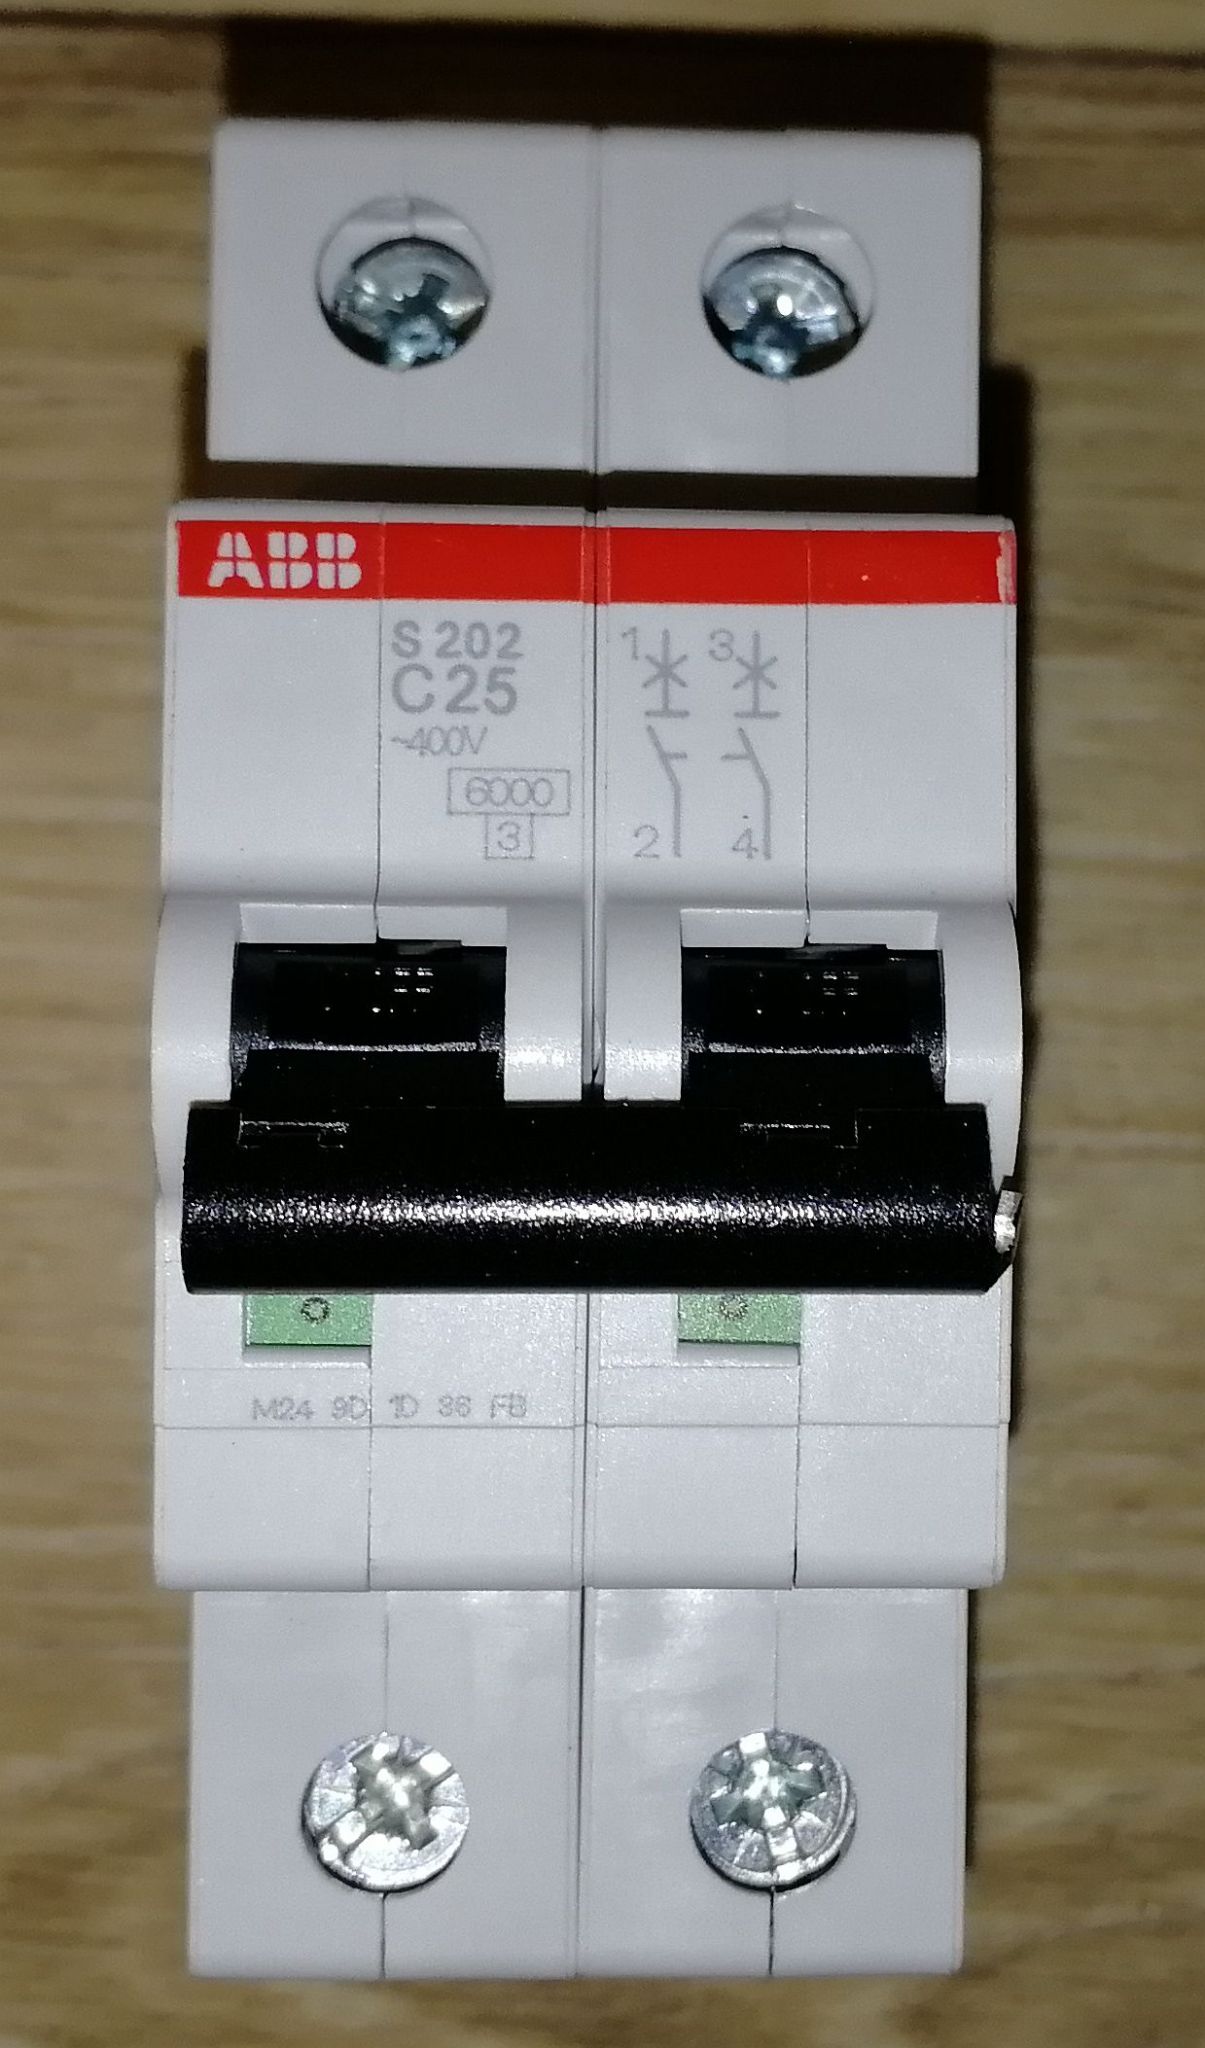 Abb автоматические выключатели 25а. S202 c2 ABB. Автомат ABB 25a. Автомат ABB c40 s202m. ABB автомат двухполюсный c25.